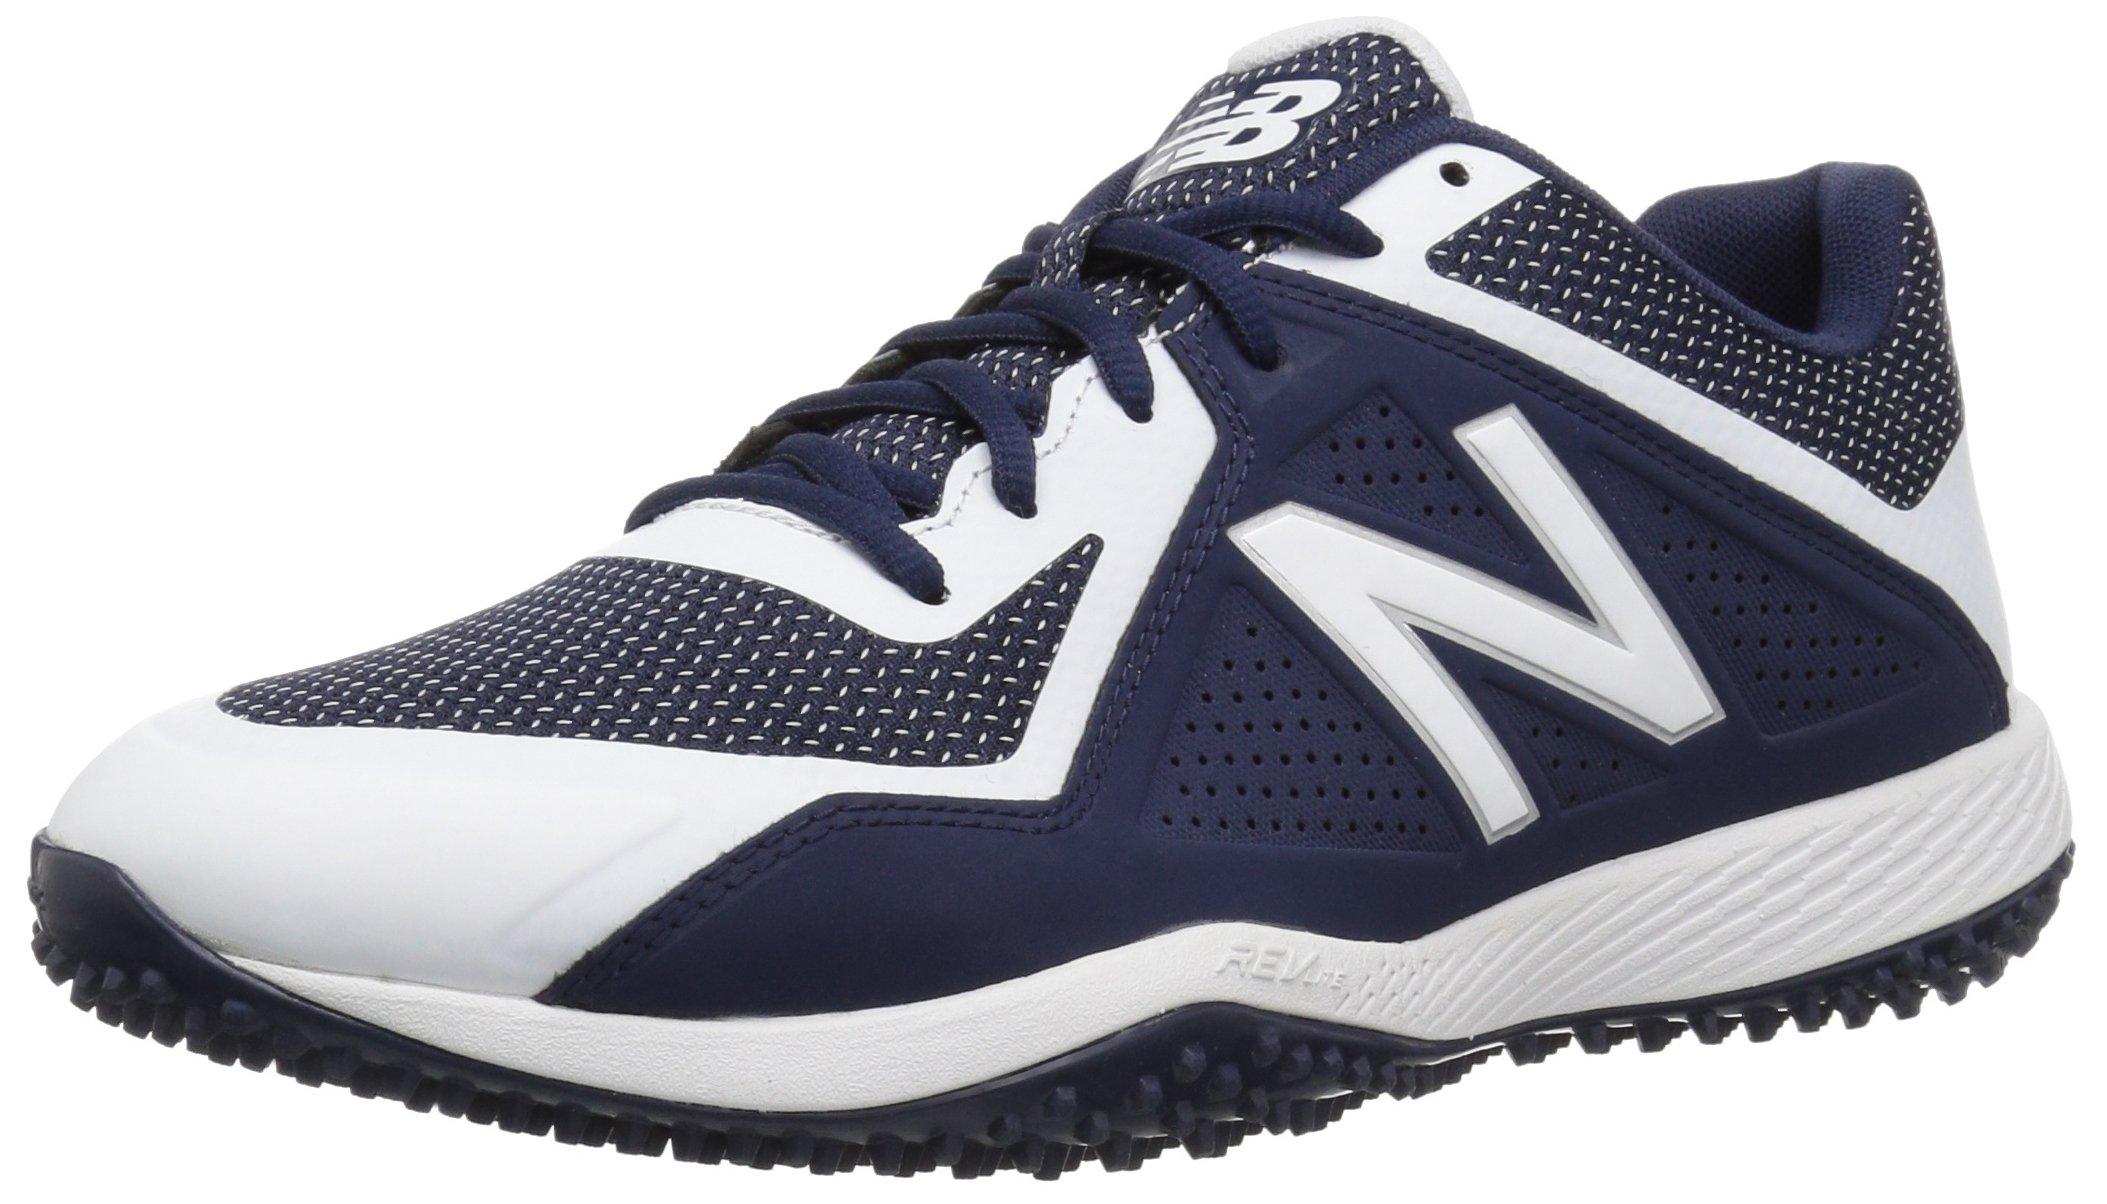 New Balance 4040 V4 Turf Baseball Shoe in Navy/White (Blue) for Men ...